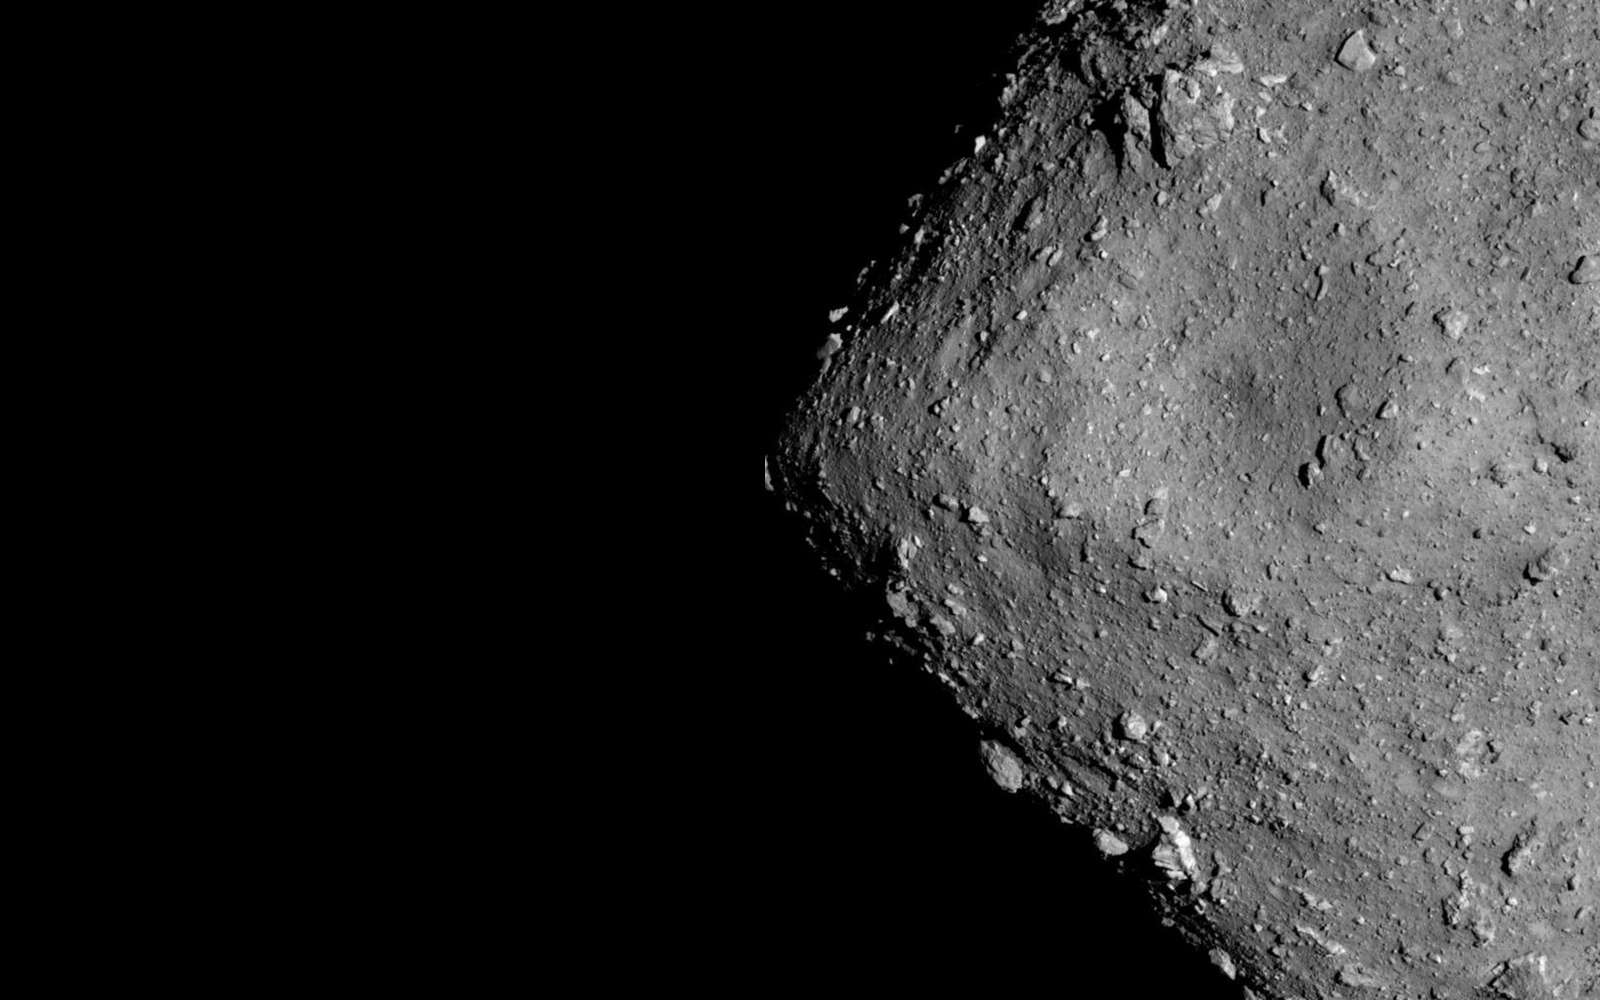 L’astéroïde Ryugu photographié à 6 km d’altitude le 20 juillet 2018. © Jaxa